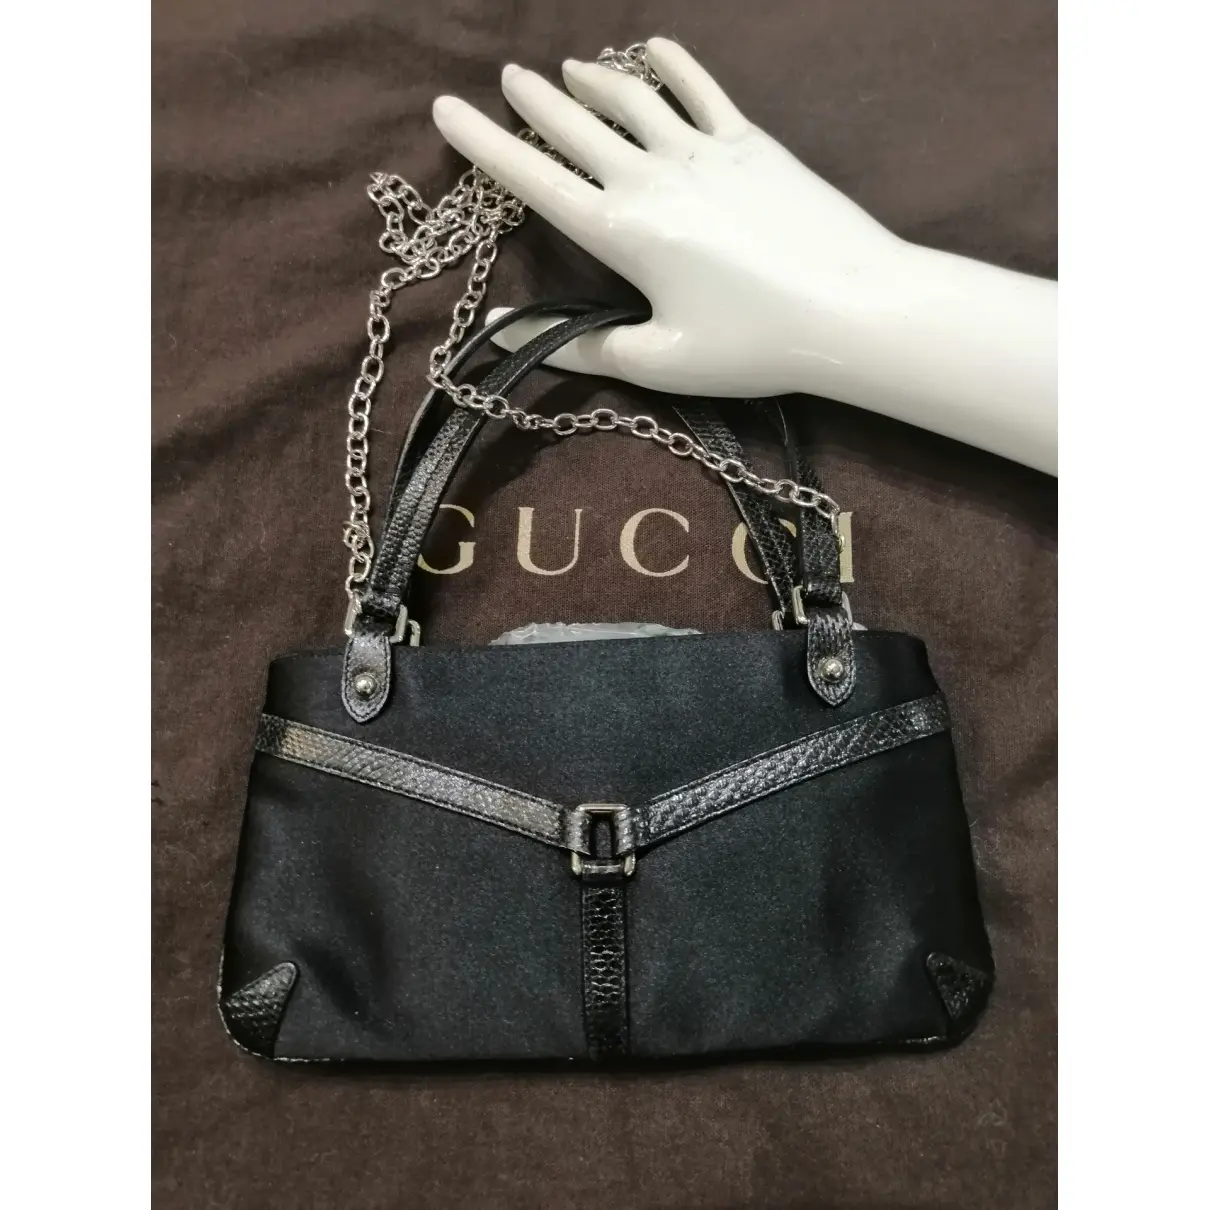 Buy Gucci Silk handbag online - Vintage